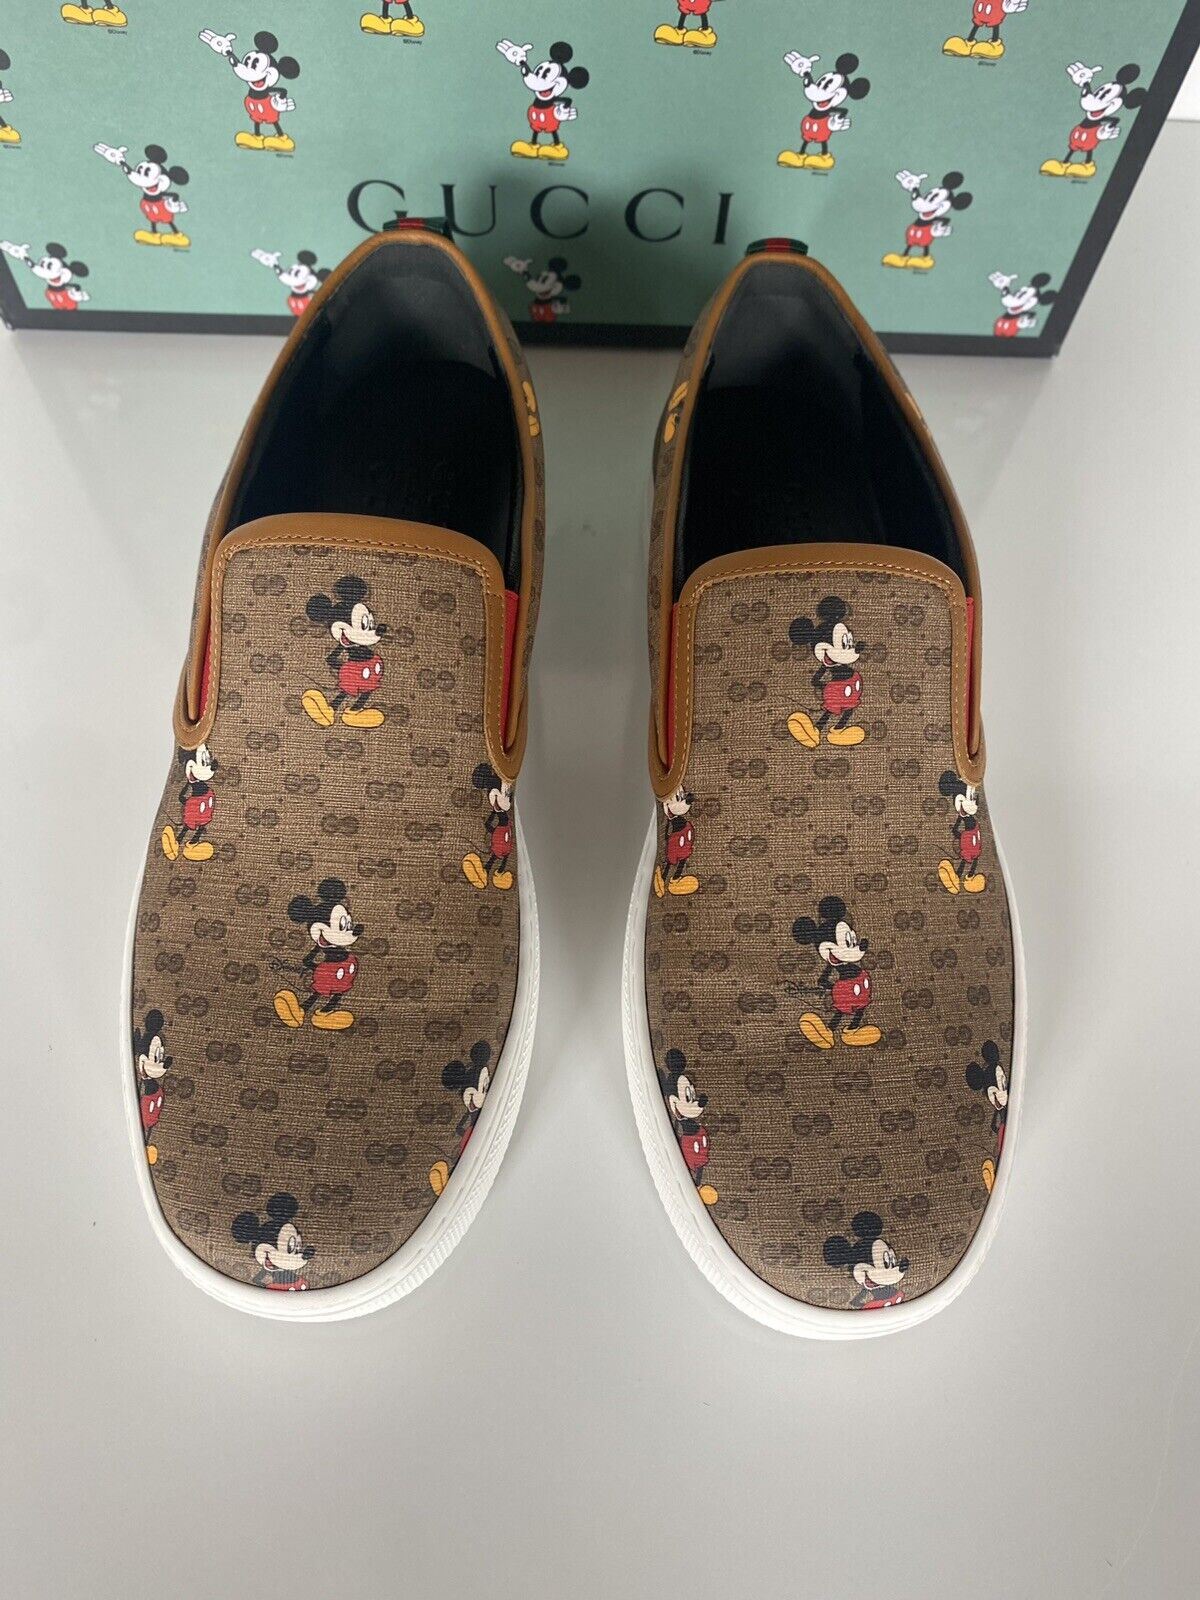 NIB Gucci Herren GG Supreme Mickey Mouse Sneakers 7,5 US (Gucci 7) Italien 603689 